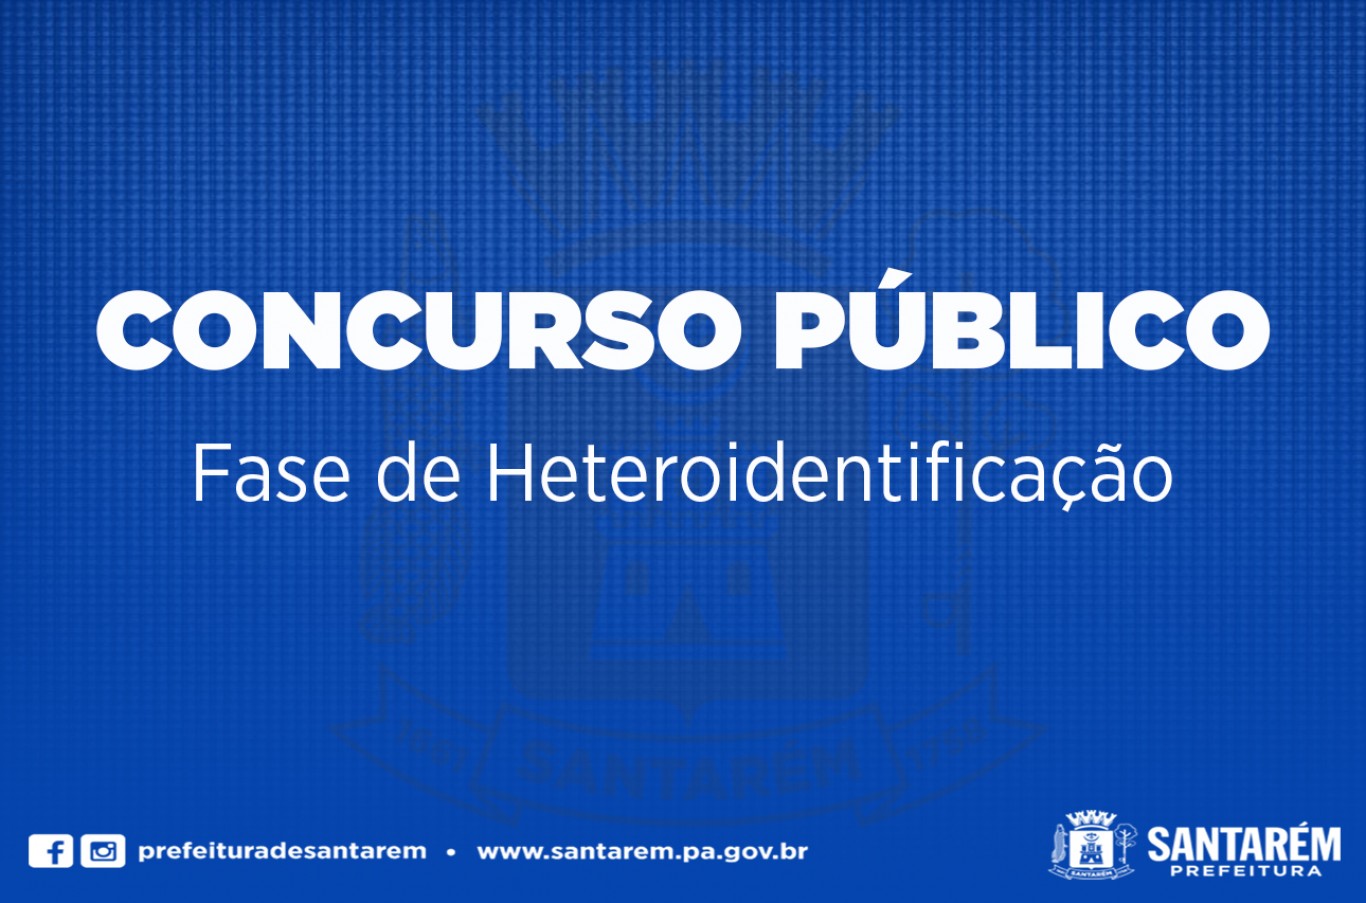 Concurso Público: Comissão de Heteroidentificação vai iniciar fase de análise de autodeclarações 